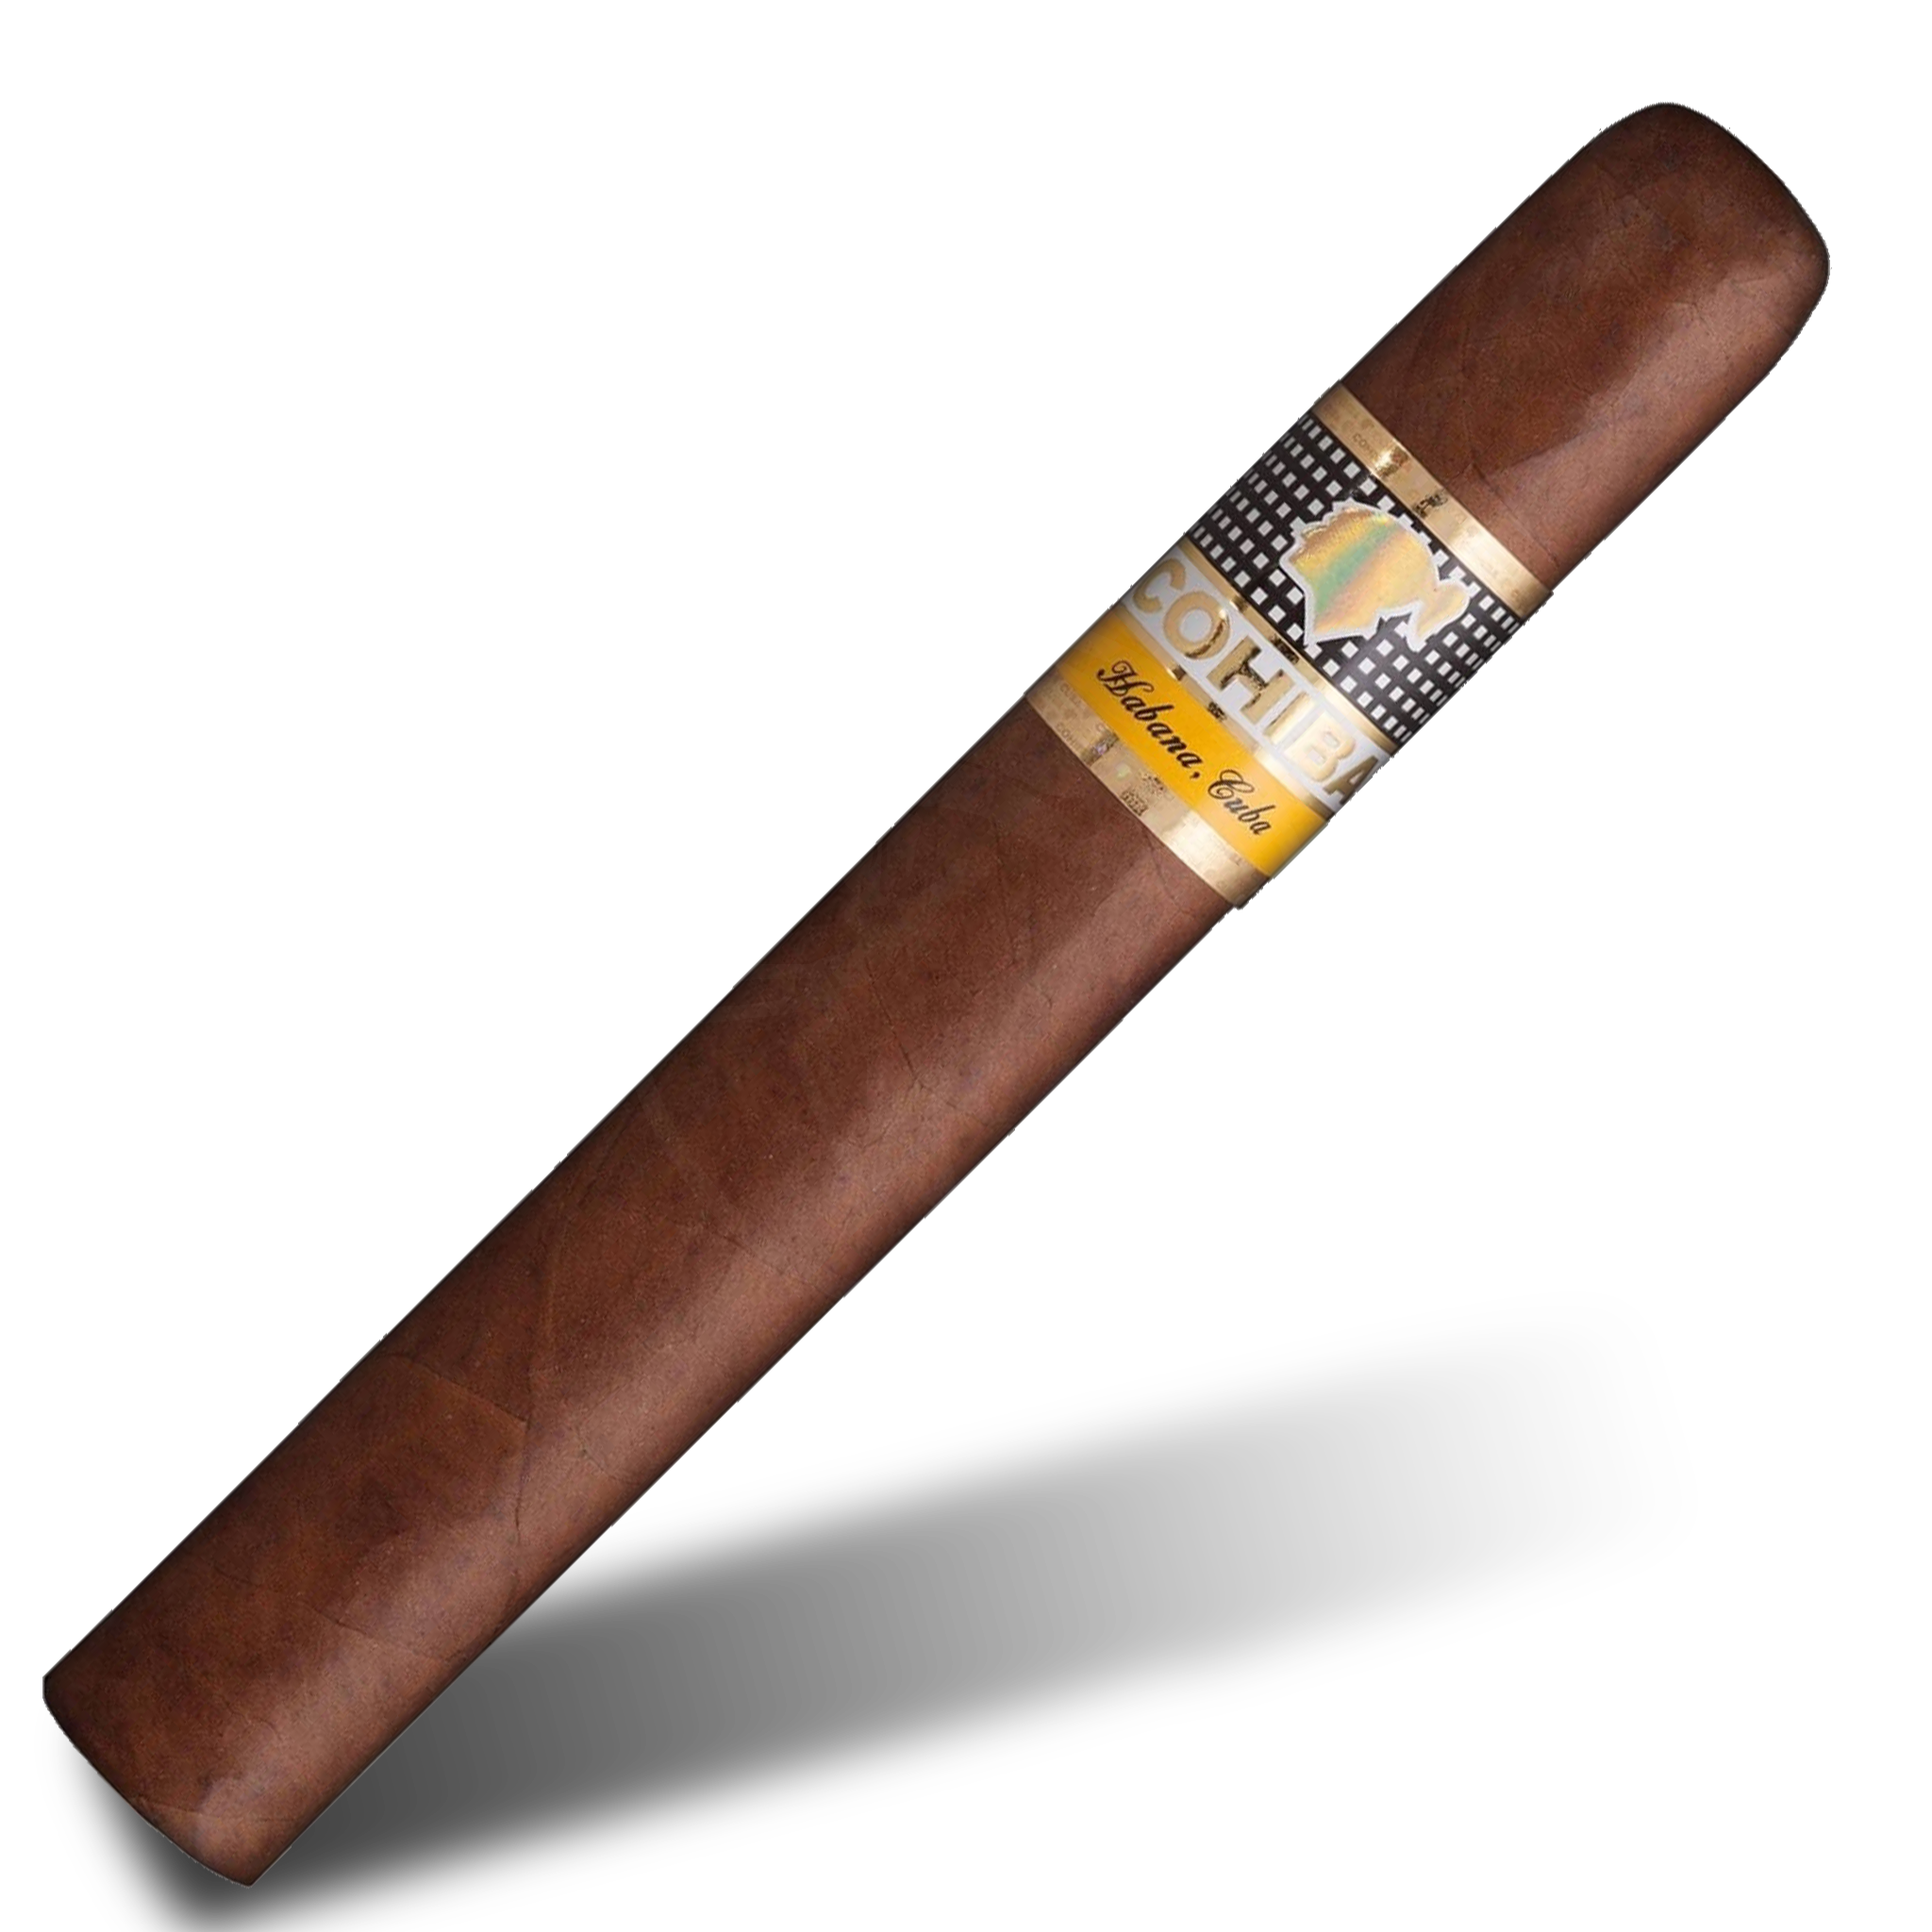 Zigarre Cohiba : Die besten kubanischen Zigarren, schnelle und sichere  Lieferung